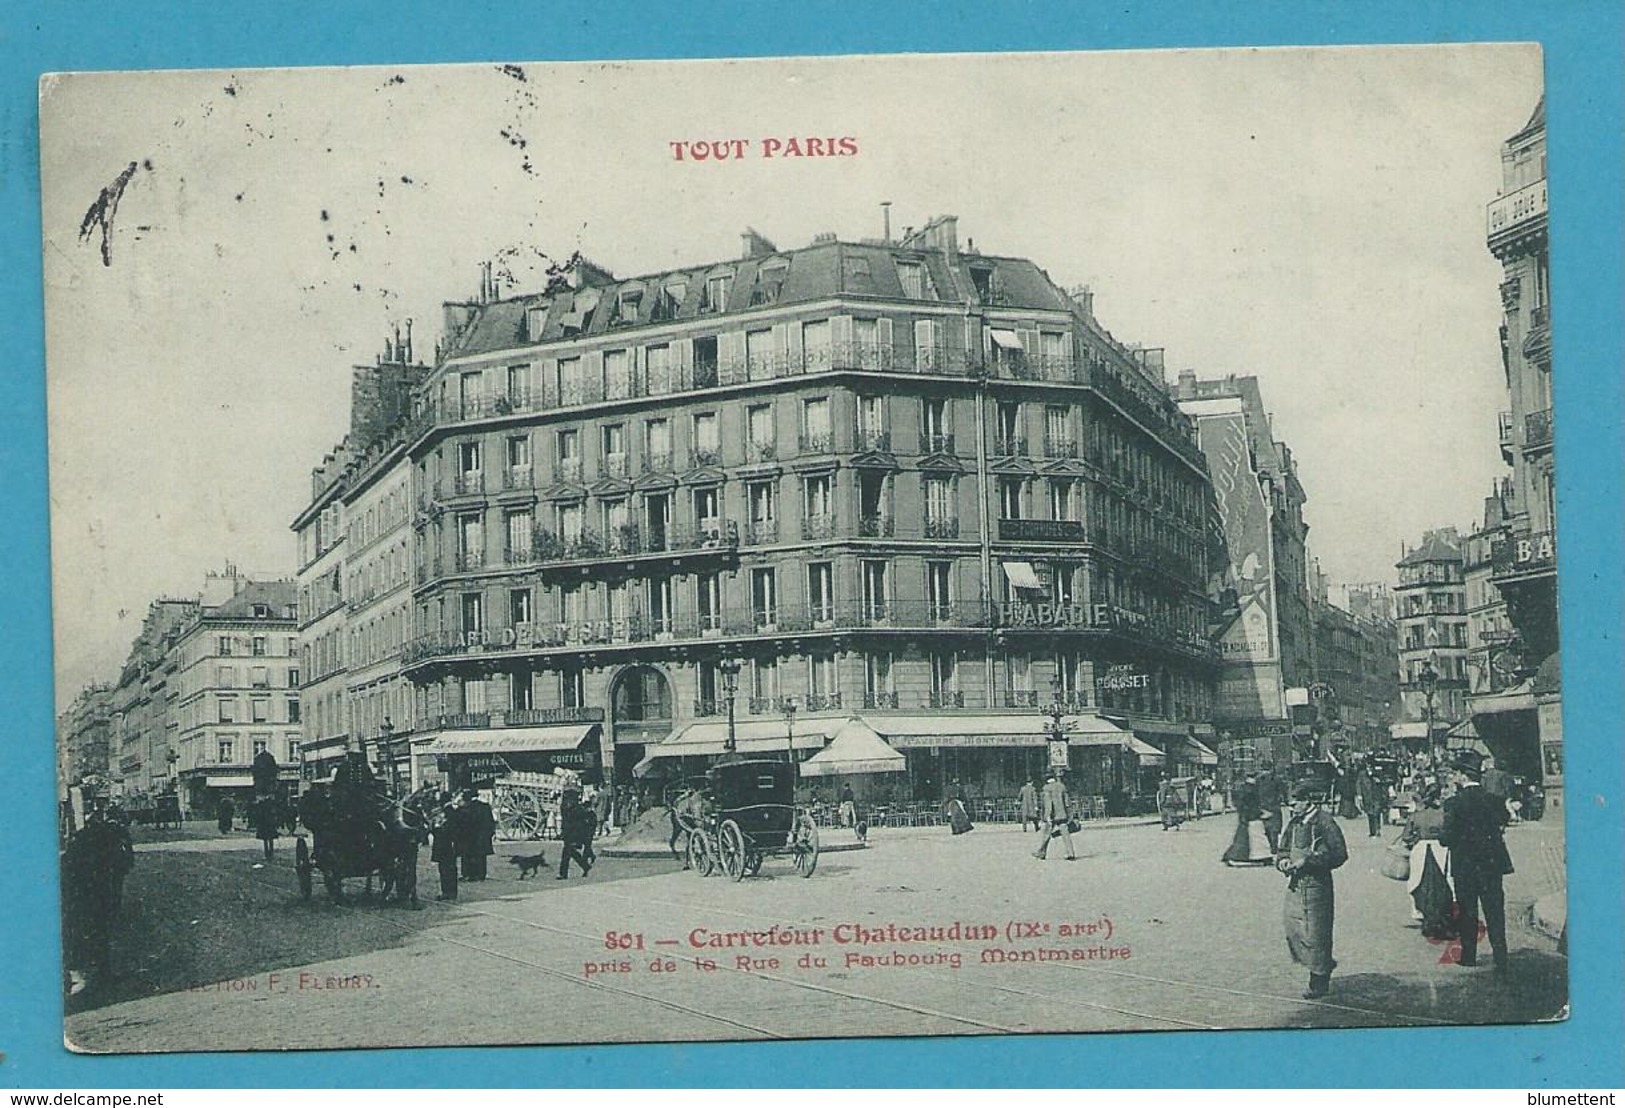 CPA TOUT PARIS 801 - Carrefour Chateaudun (IXème Arrt.) Edition FLEURY - Paris (09)